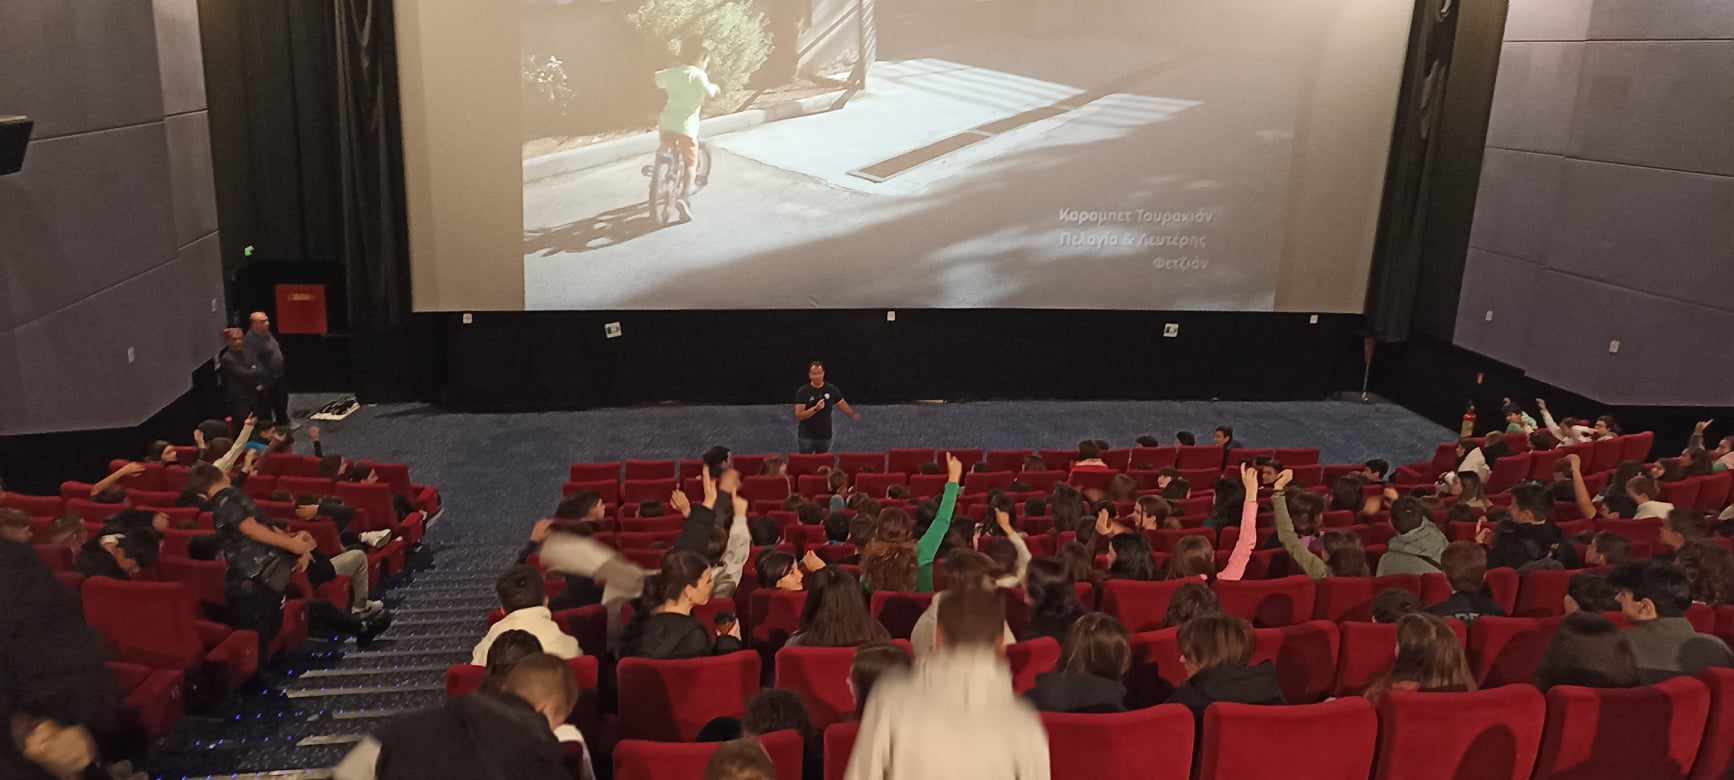 Εκπαιδευτική επίσκεψη του Γυμνασίου Σαραβαλίου στον πολυχώρο Veso Mare, για την προβολή της βραβευμένης ταινίας «Τα Όριά μας»,